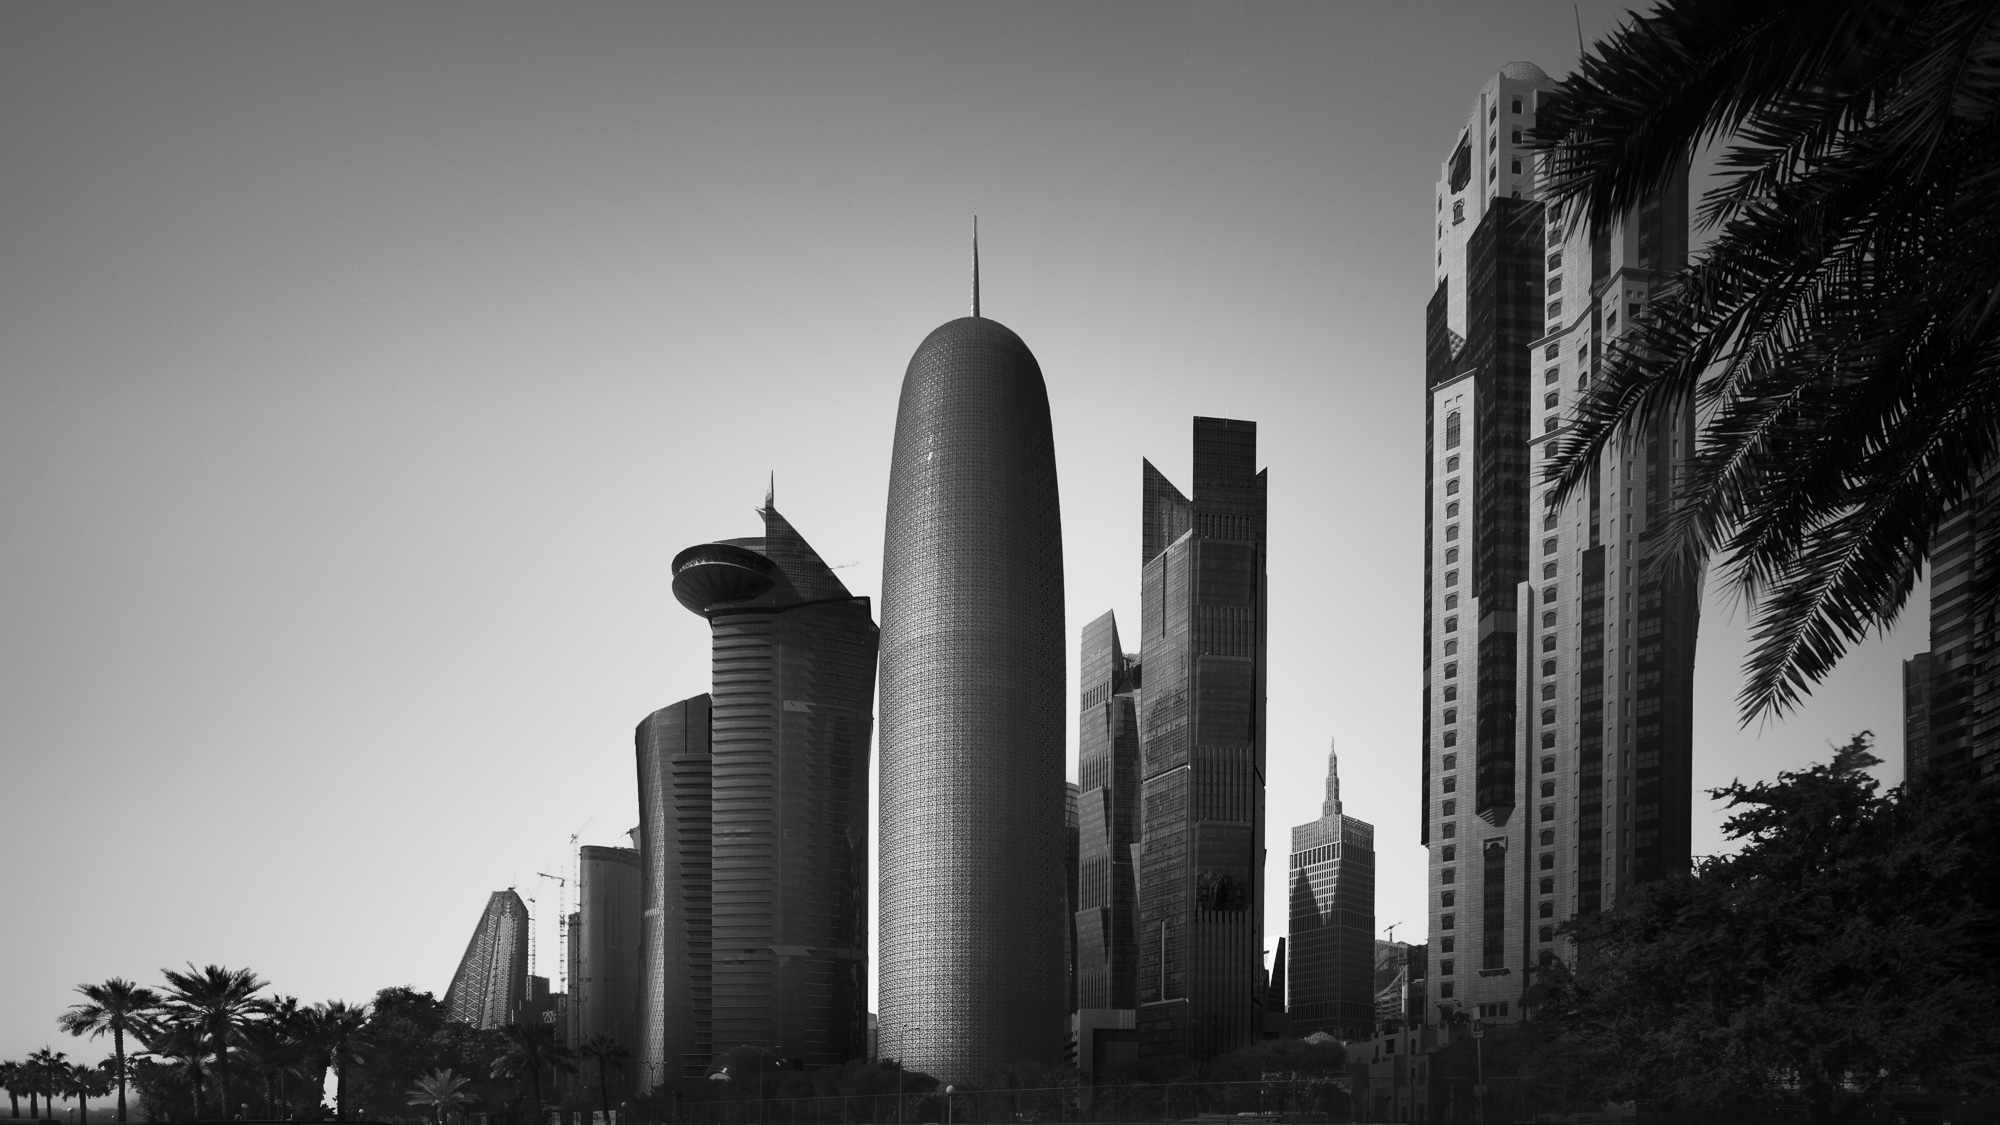 Doha Skyline with Burj Doha Tower